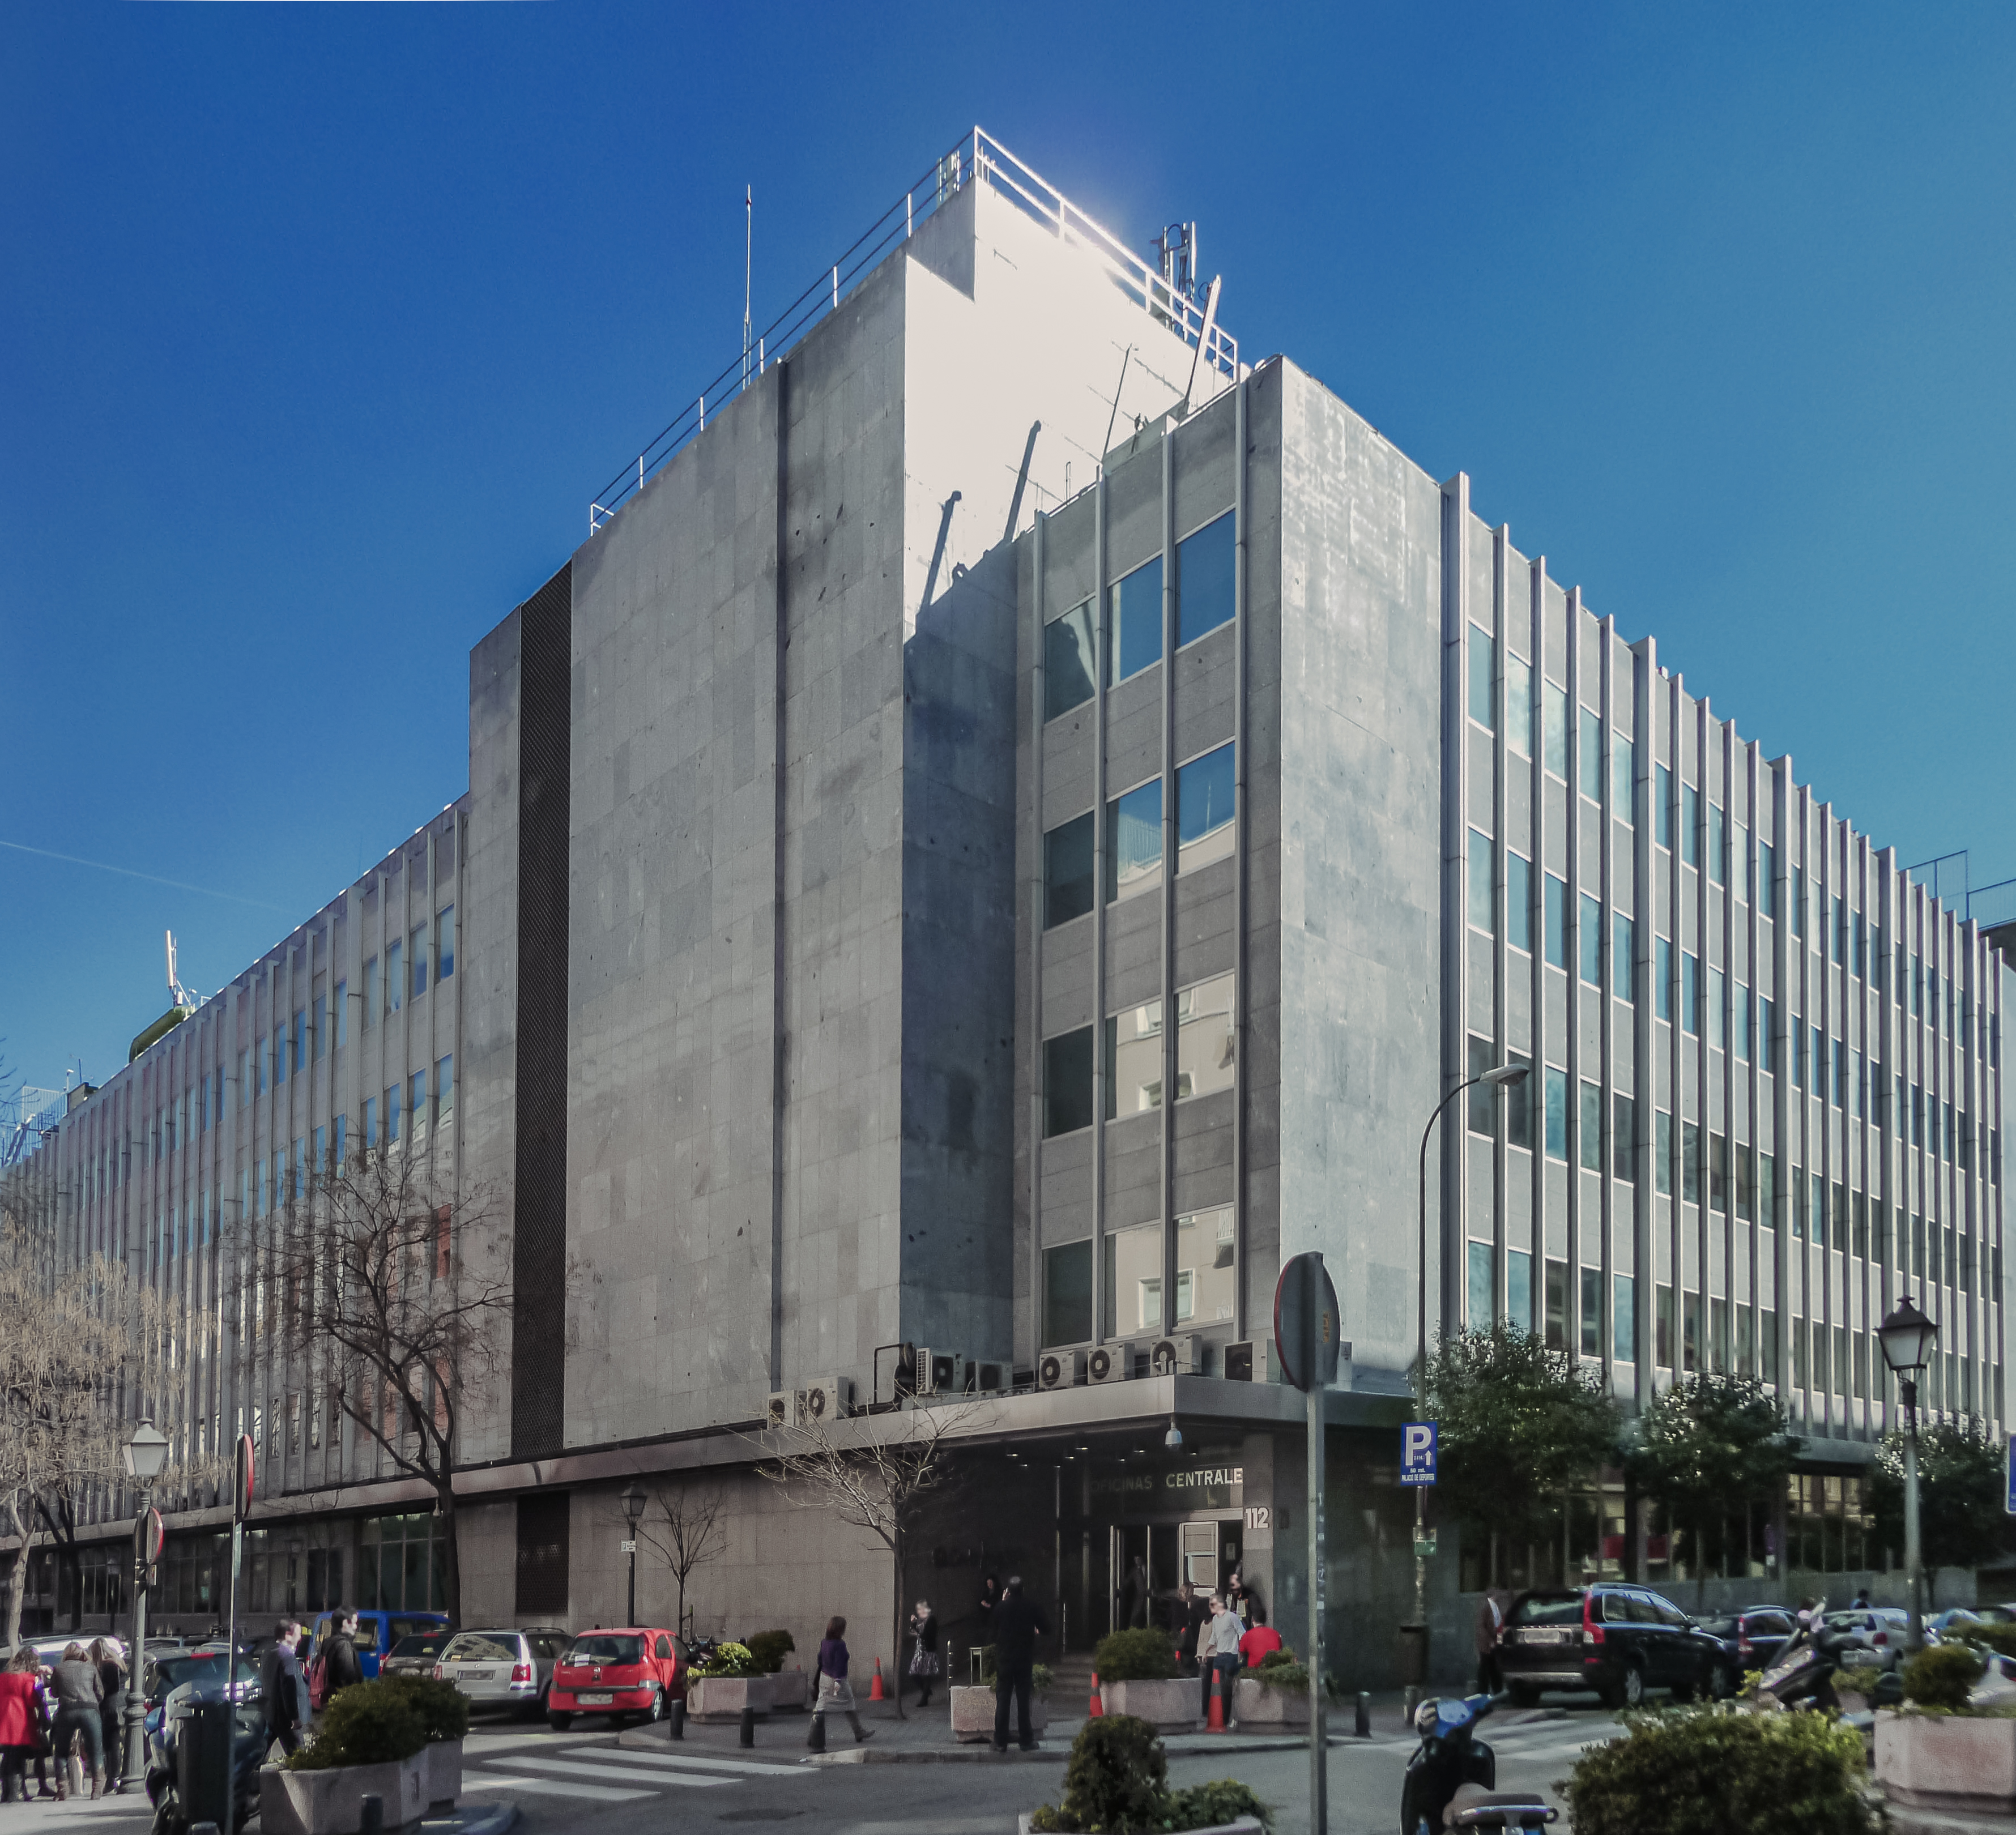 File:Oficinas centrales de El Corte Inglés (Madrid) 03.jpg - Wikimedia